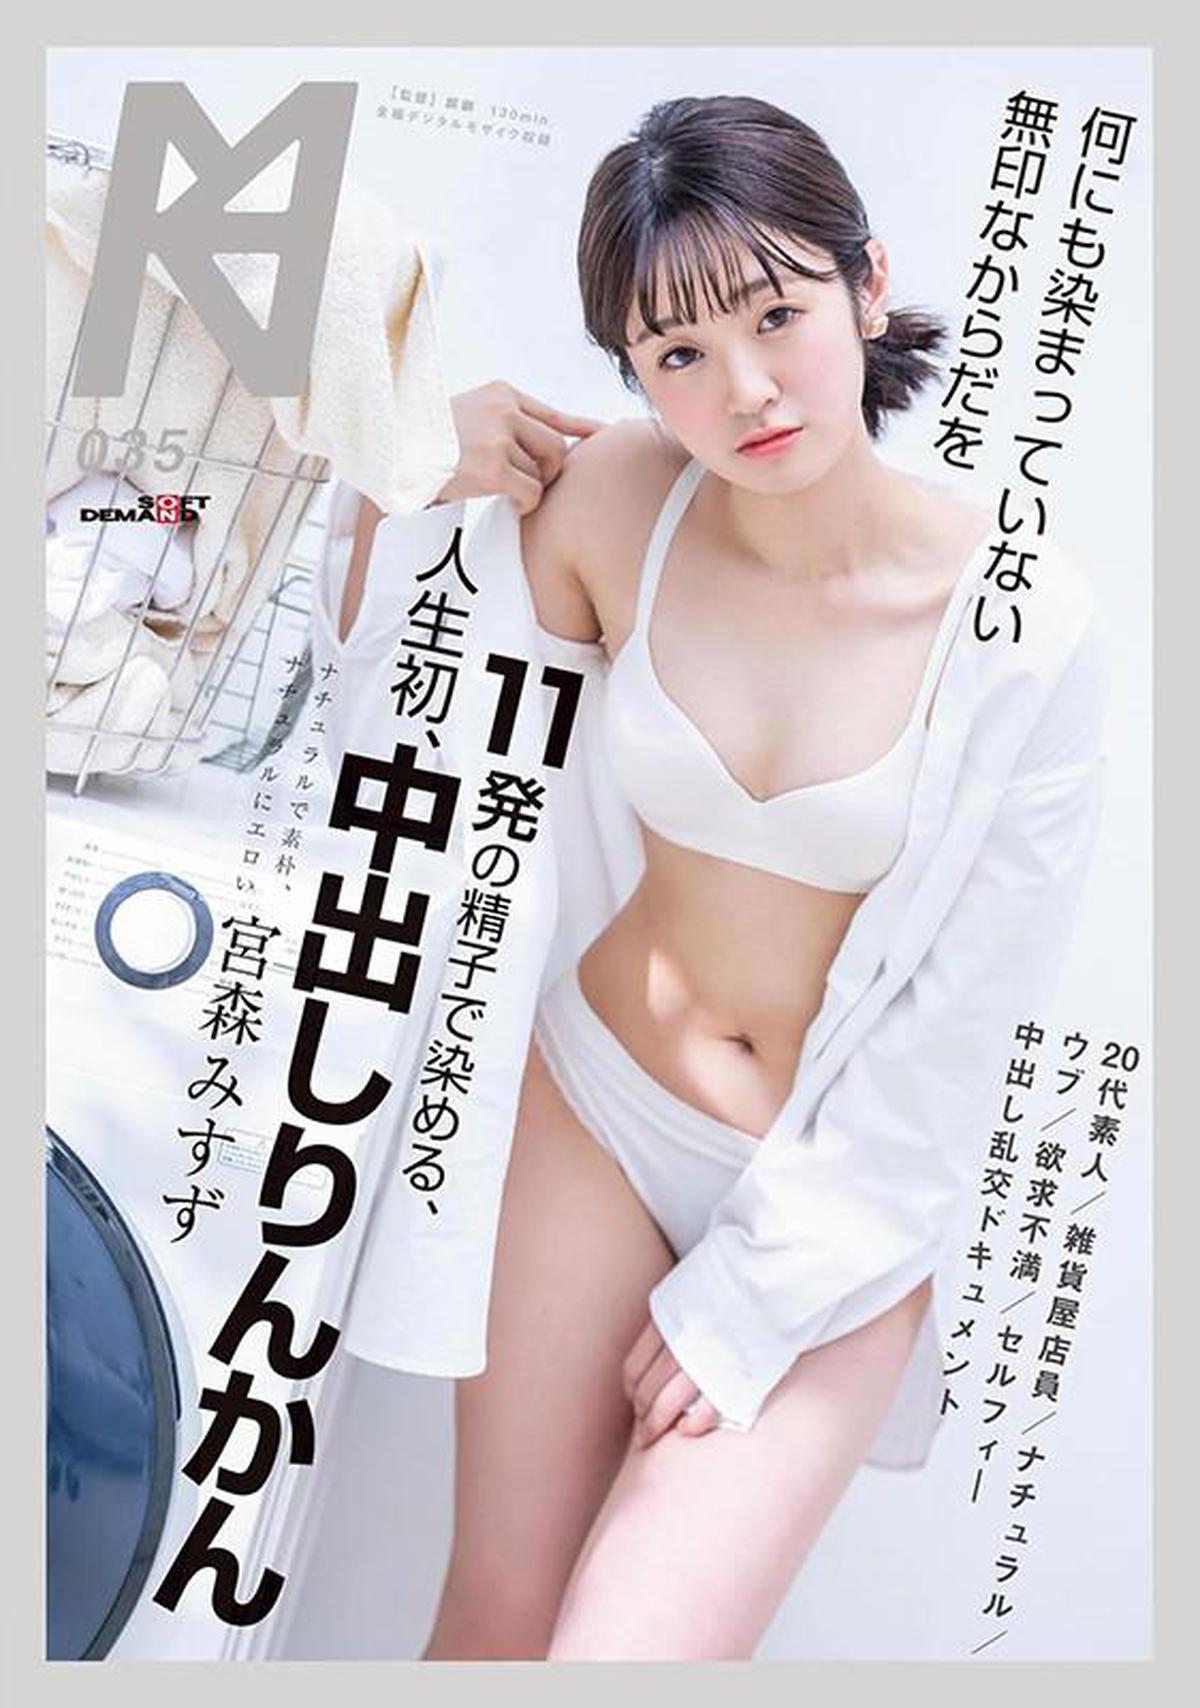 KMHRS-041 Ungefärbten Körper ohne Marke mit 11 Sperma färben, erster Creampie Rinkan Miyamori Misuzu